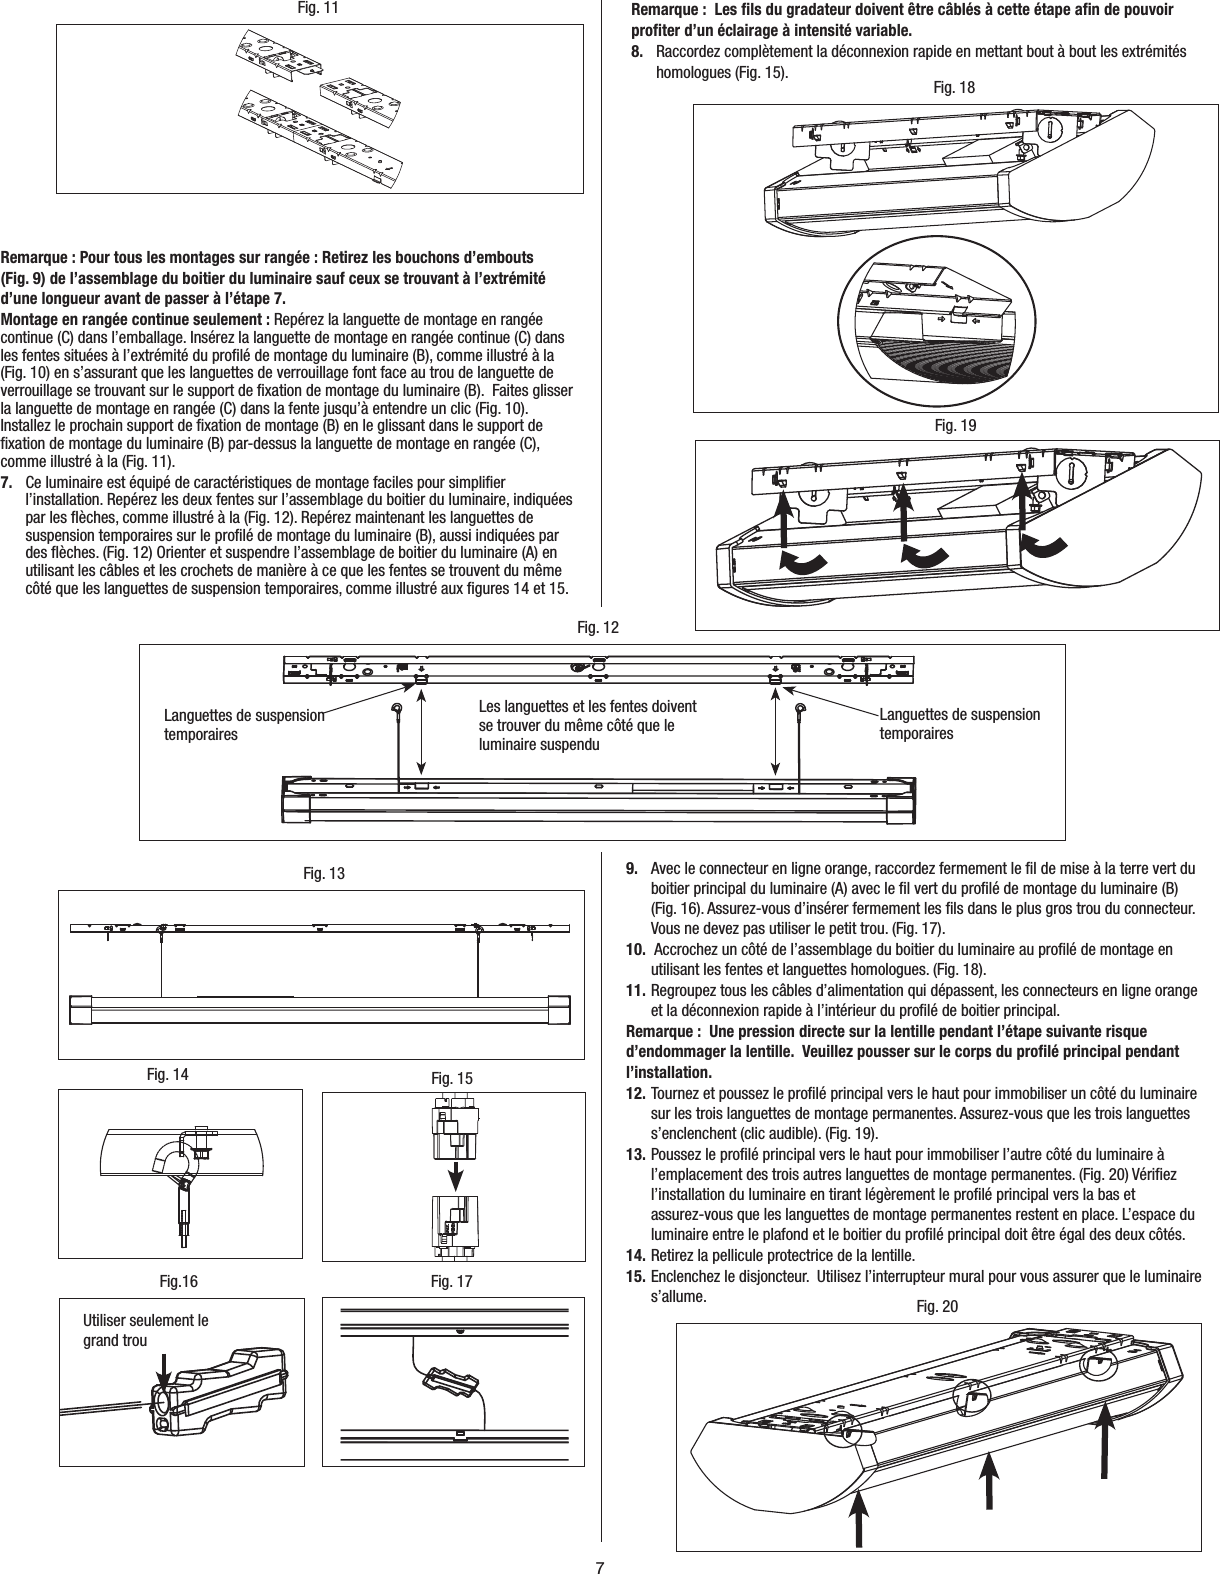 Metalux Wiring Diagram - Wiring Diagram Schema